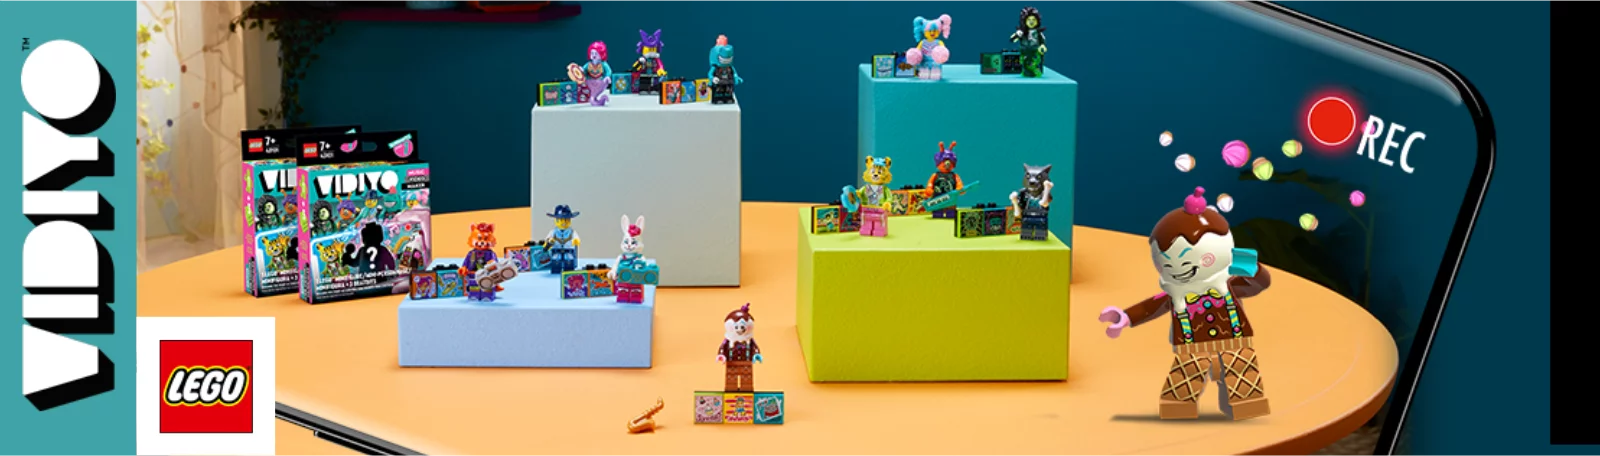 LEGO Vidiyo bei Spielzeugwelten.de